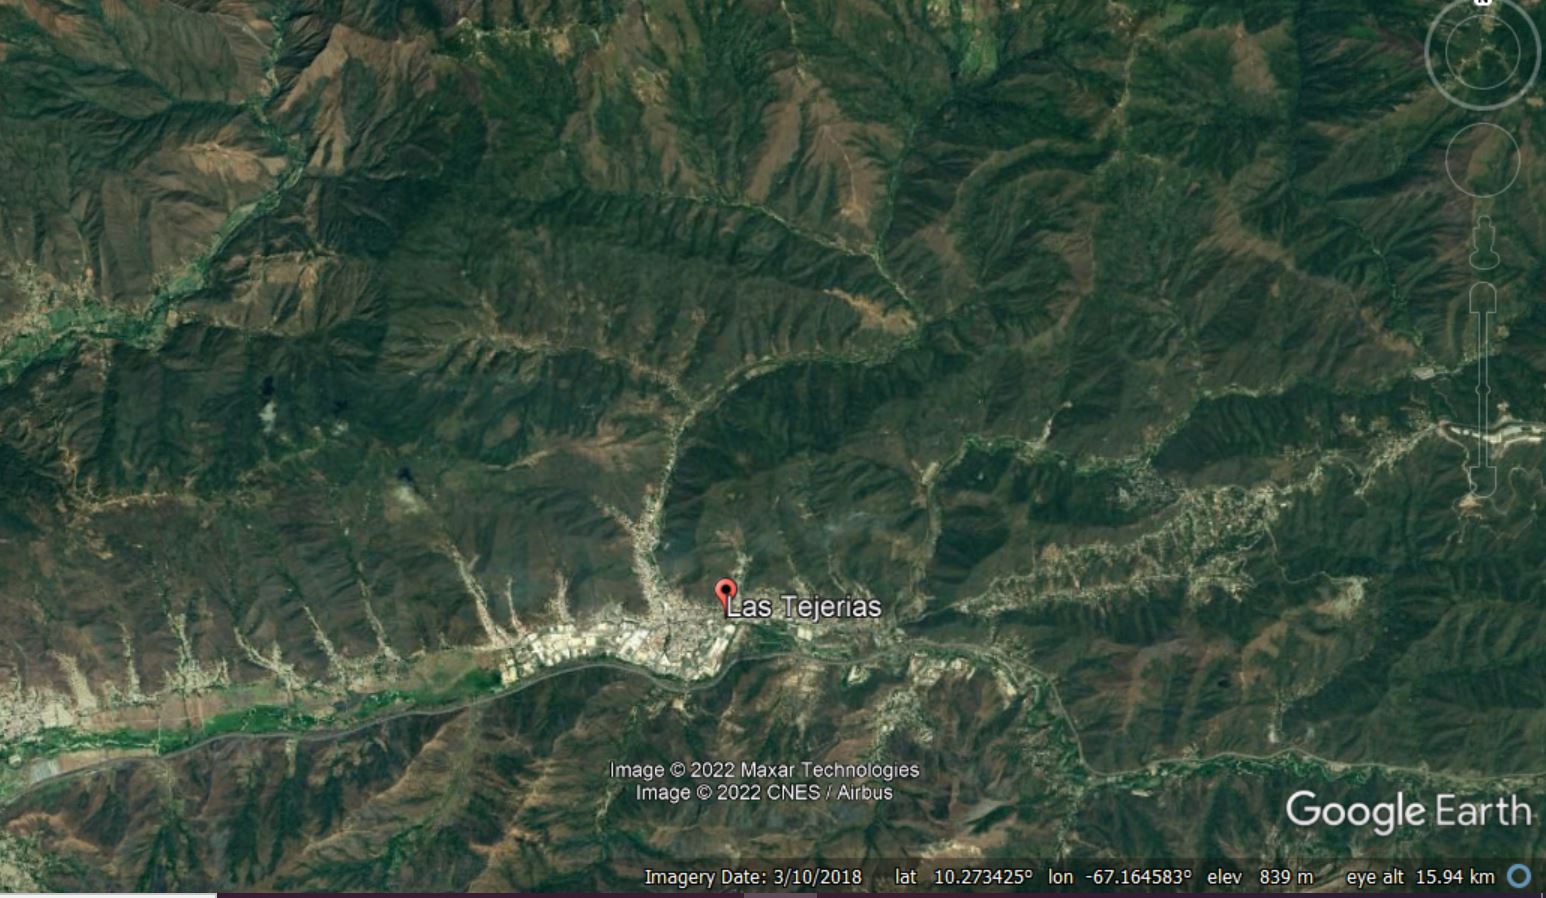 Google Earth view of the town of Las Tejerías in Venezuela.